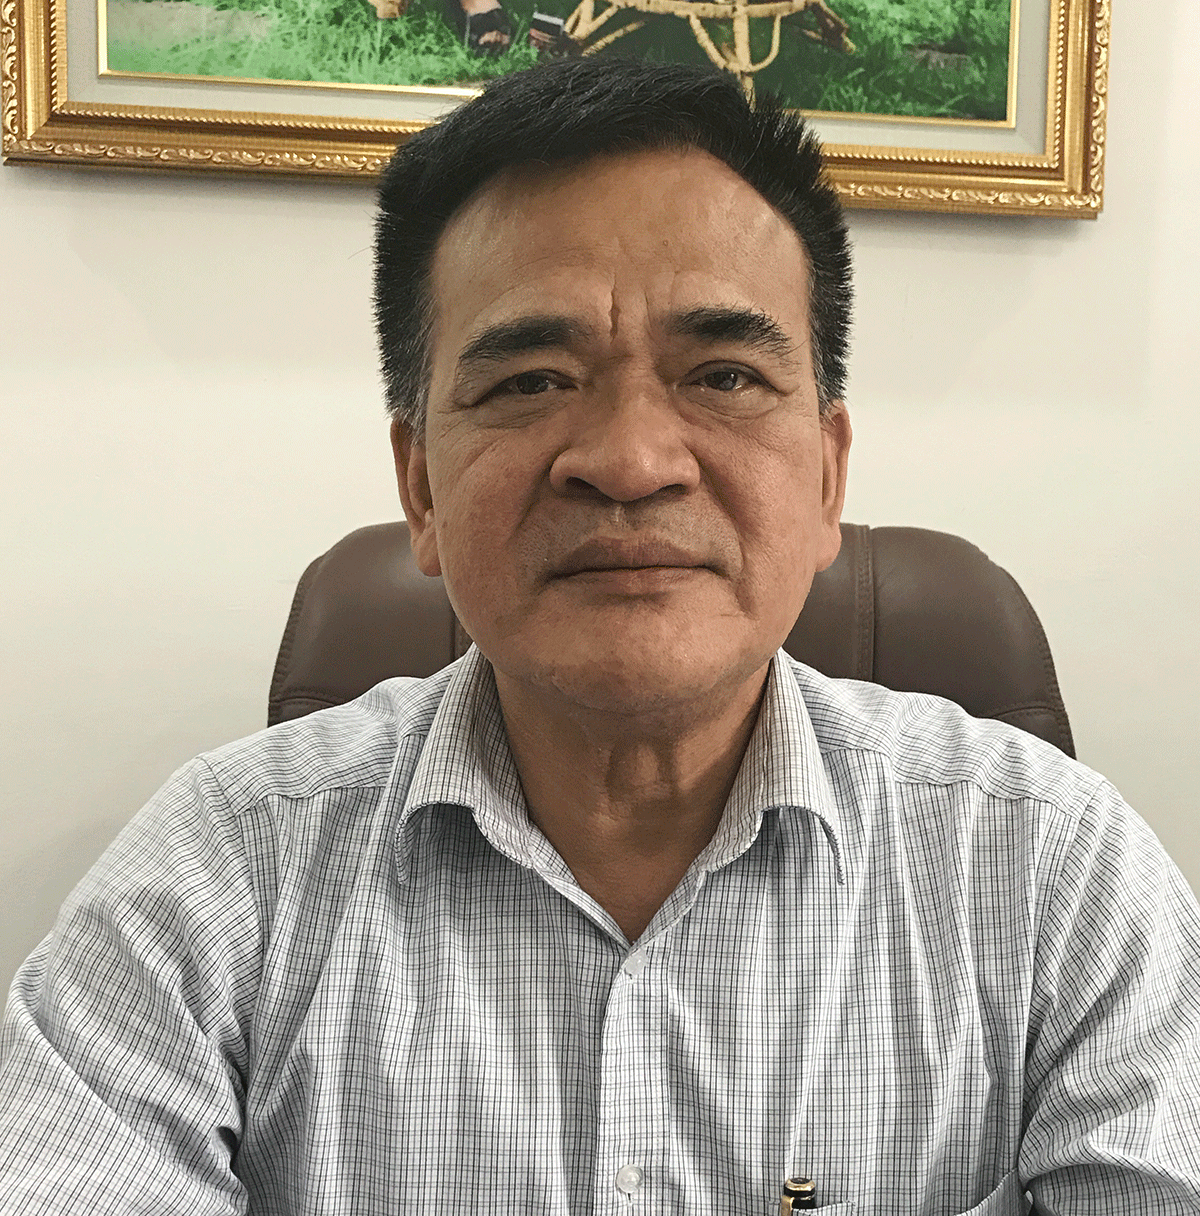 Đồng chí Nguyễn Thanh Tùng, Chánh văn phòng Ban ATGT tỉnh